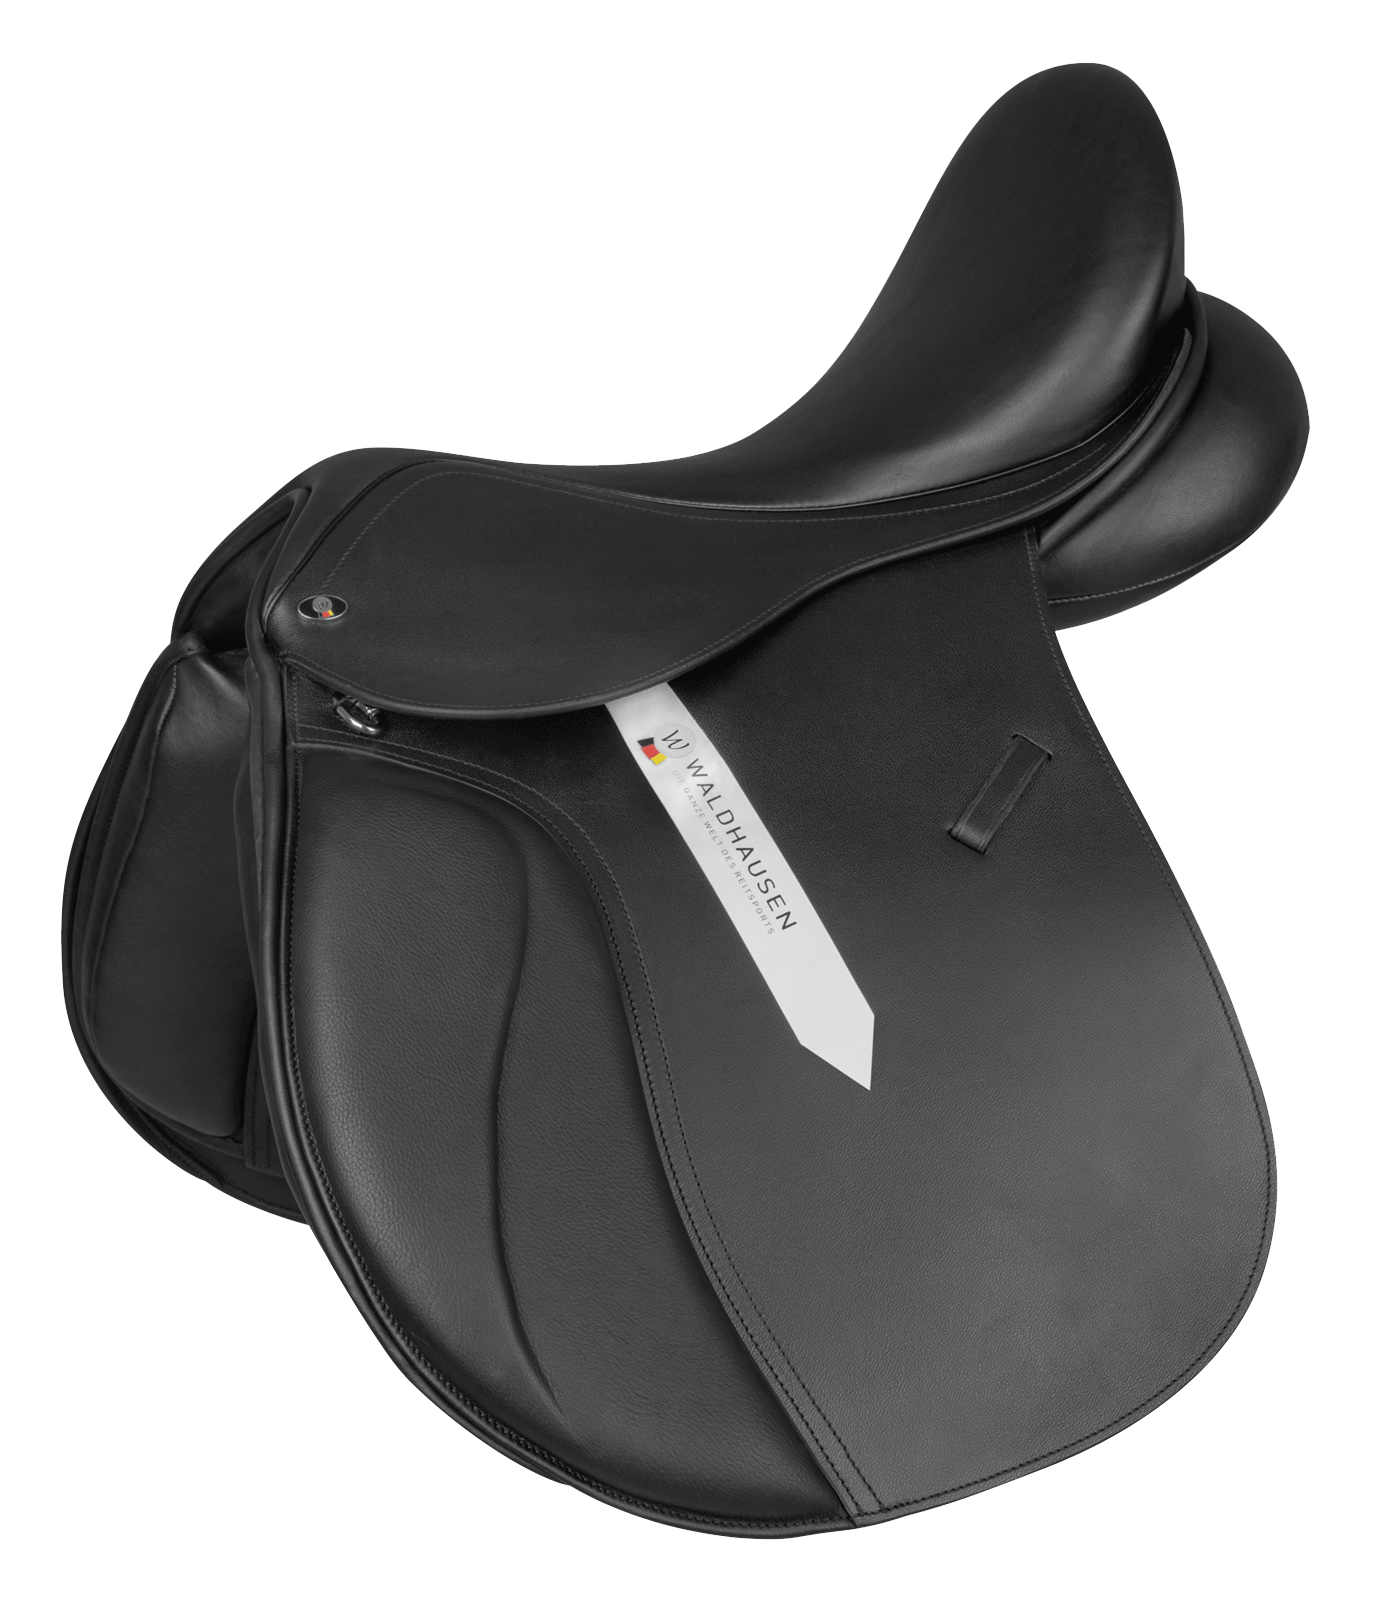 Premium All Purpose Saddle, leather black